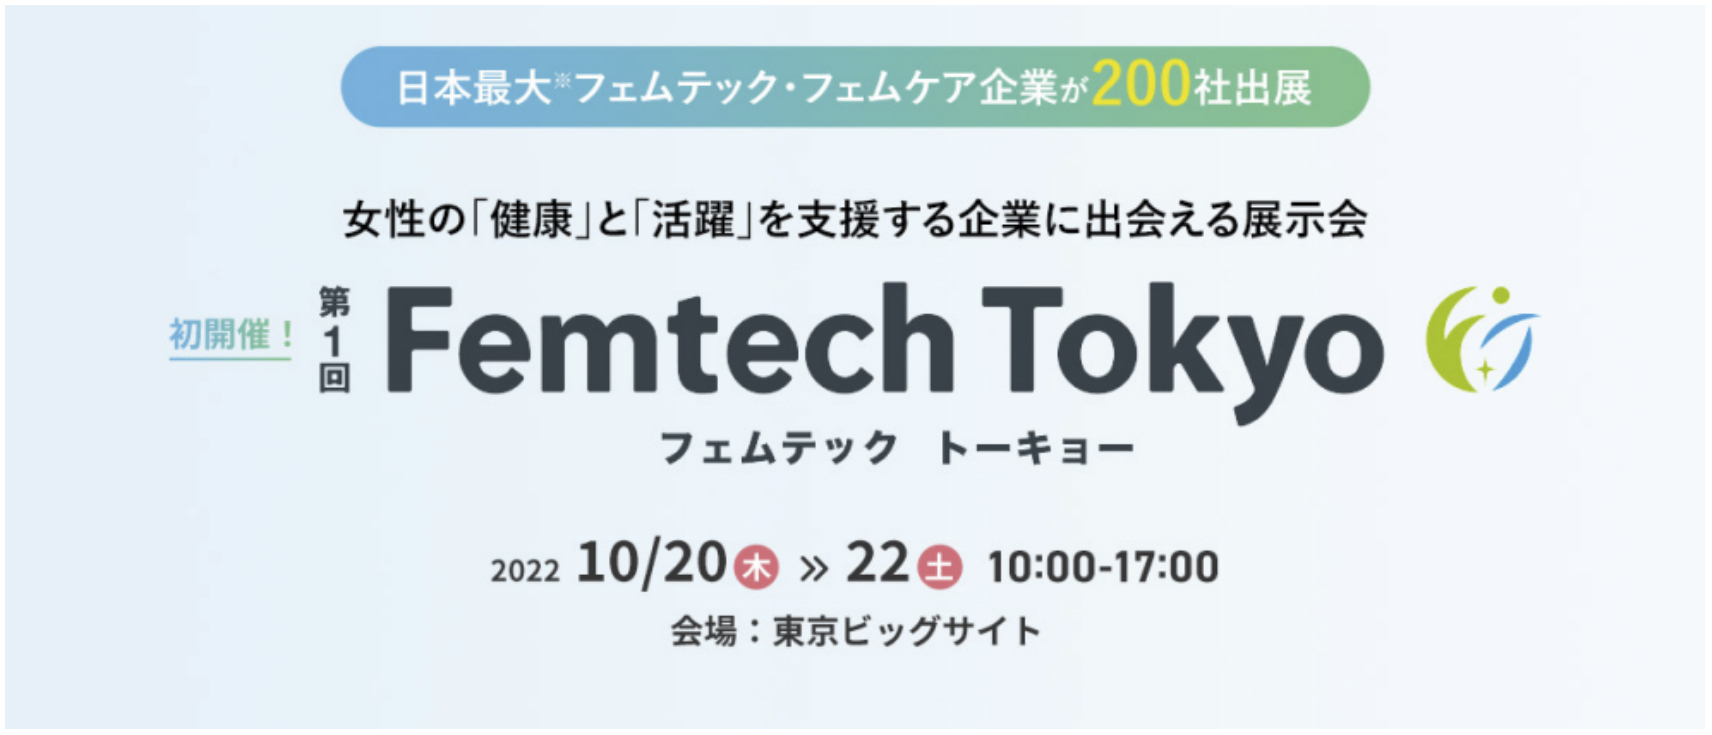 tFebNuhgFI ME KAhwFemtech Fes! 2022(10/14`16)xƁwFemtech Tokyo(10/20`22)xɏoW